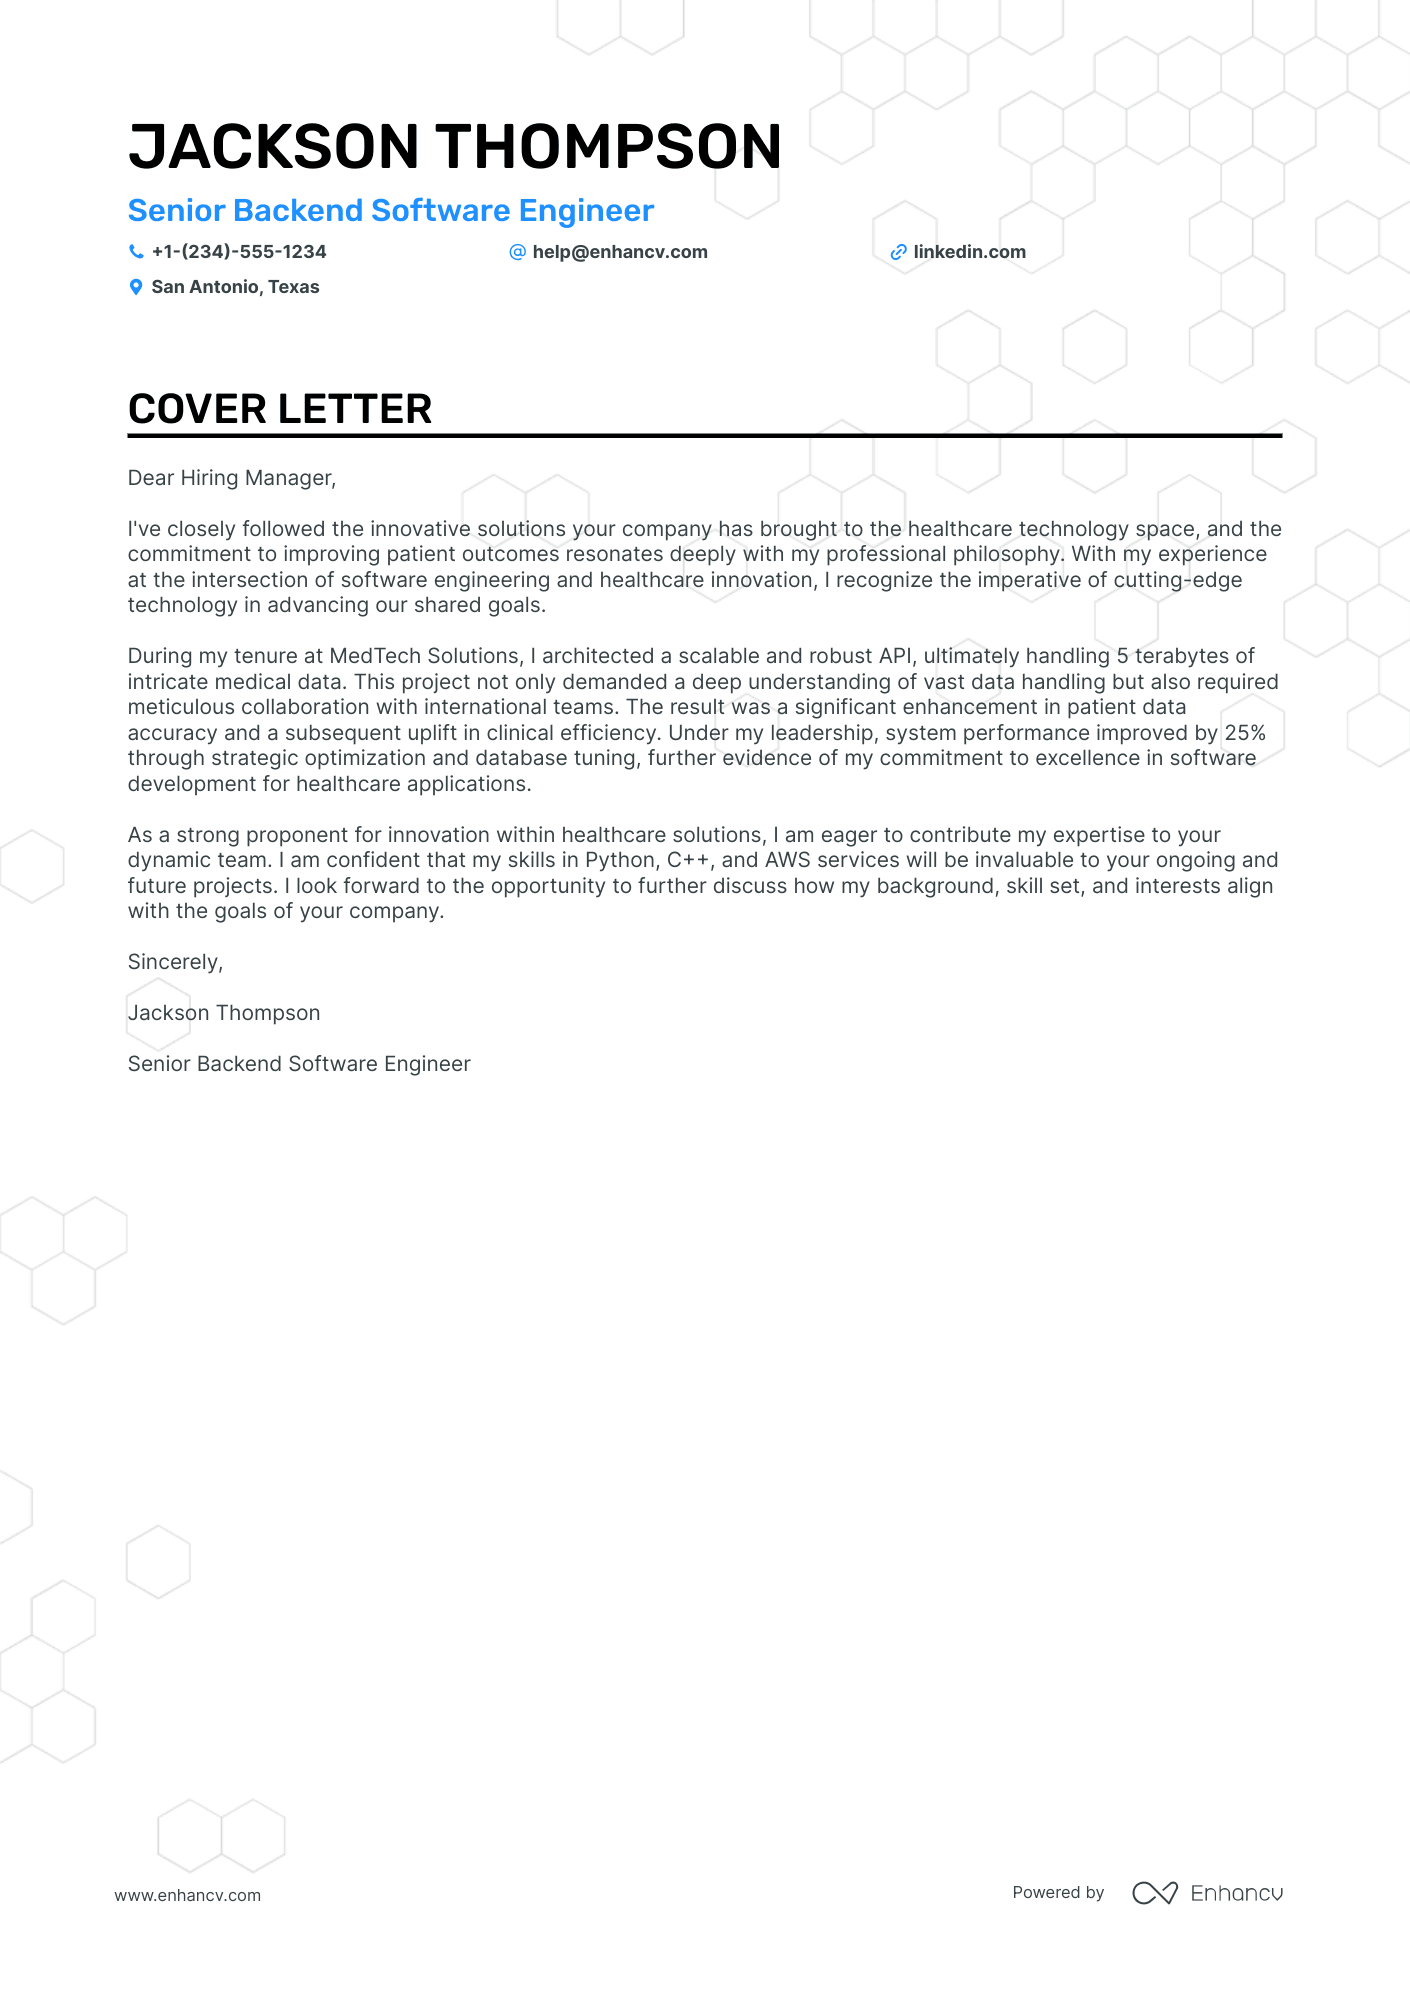 cover letter for front end developer internship